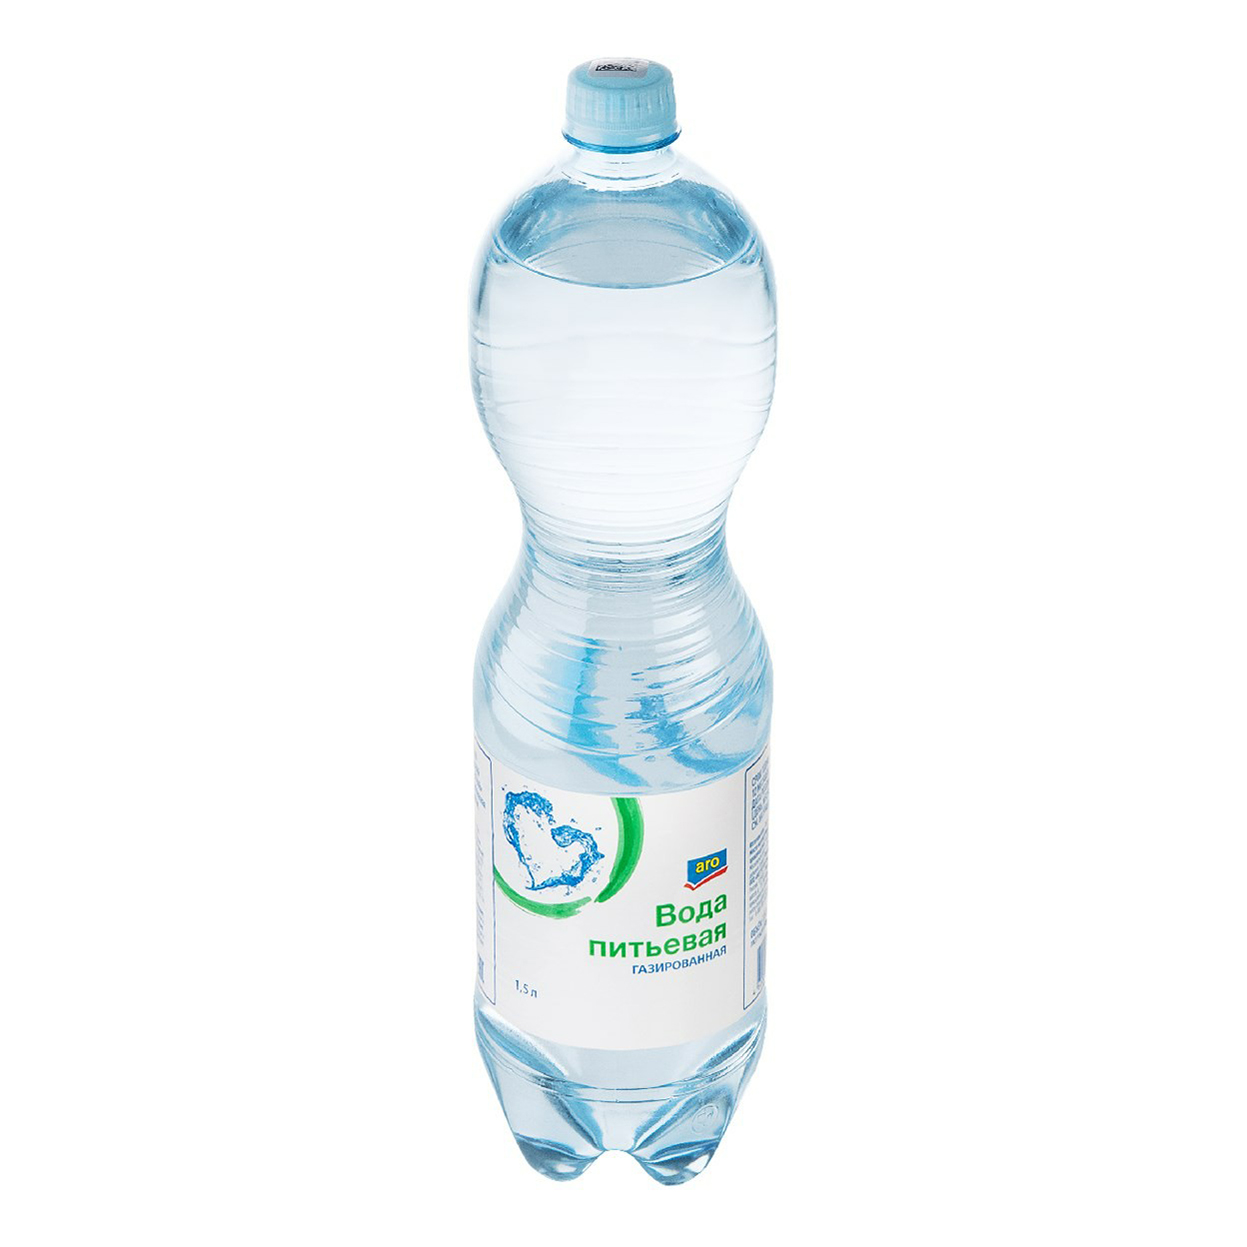 

Вода питьевая Aro газированная 1,5 л